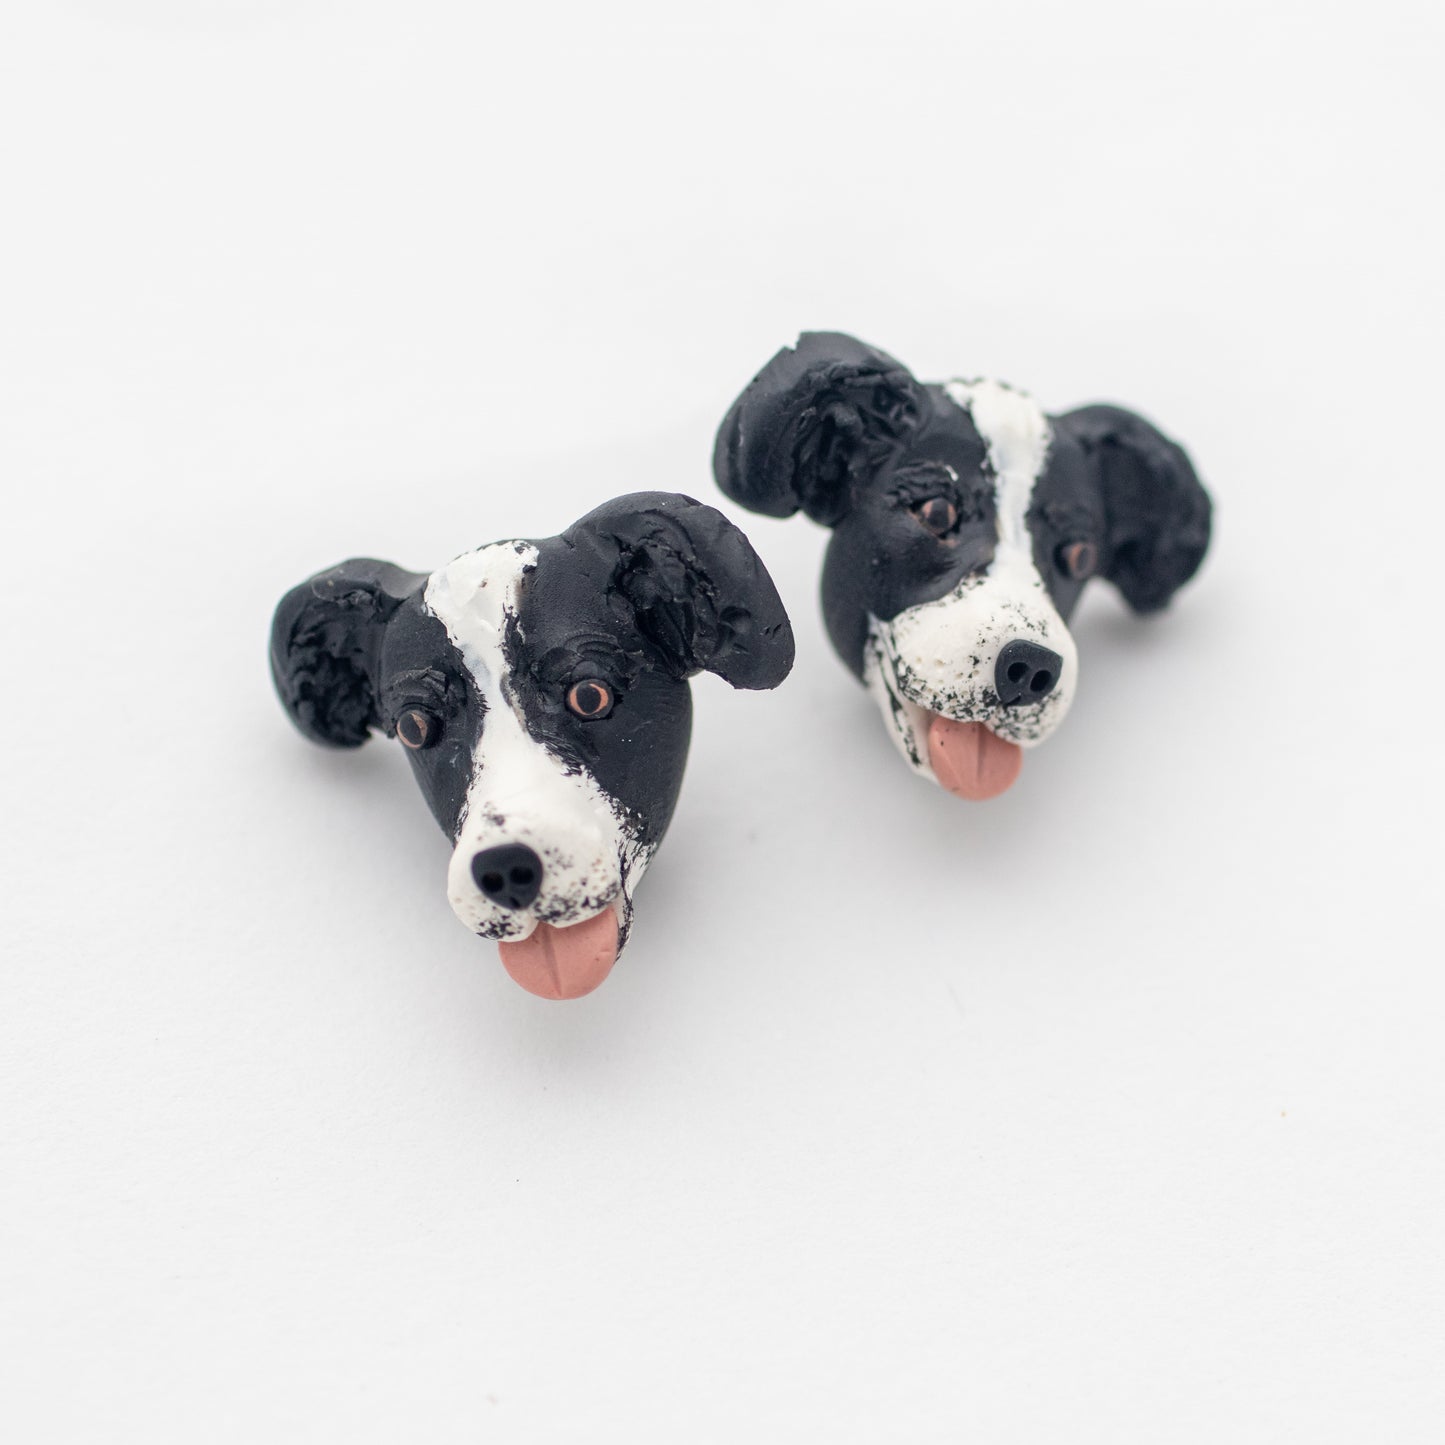 Handmade border collie dog earrings on white background